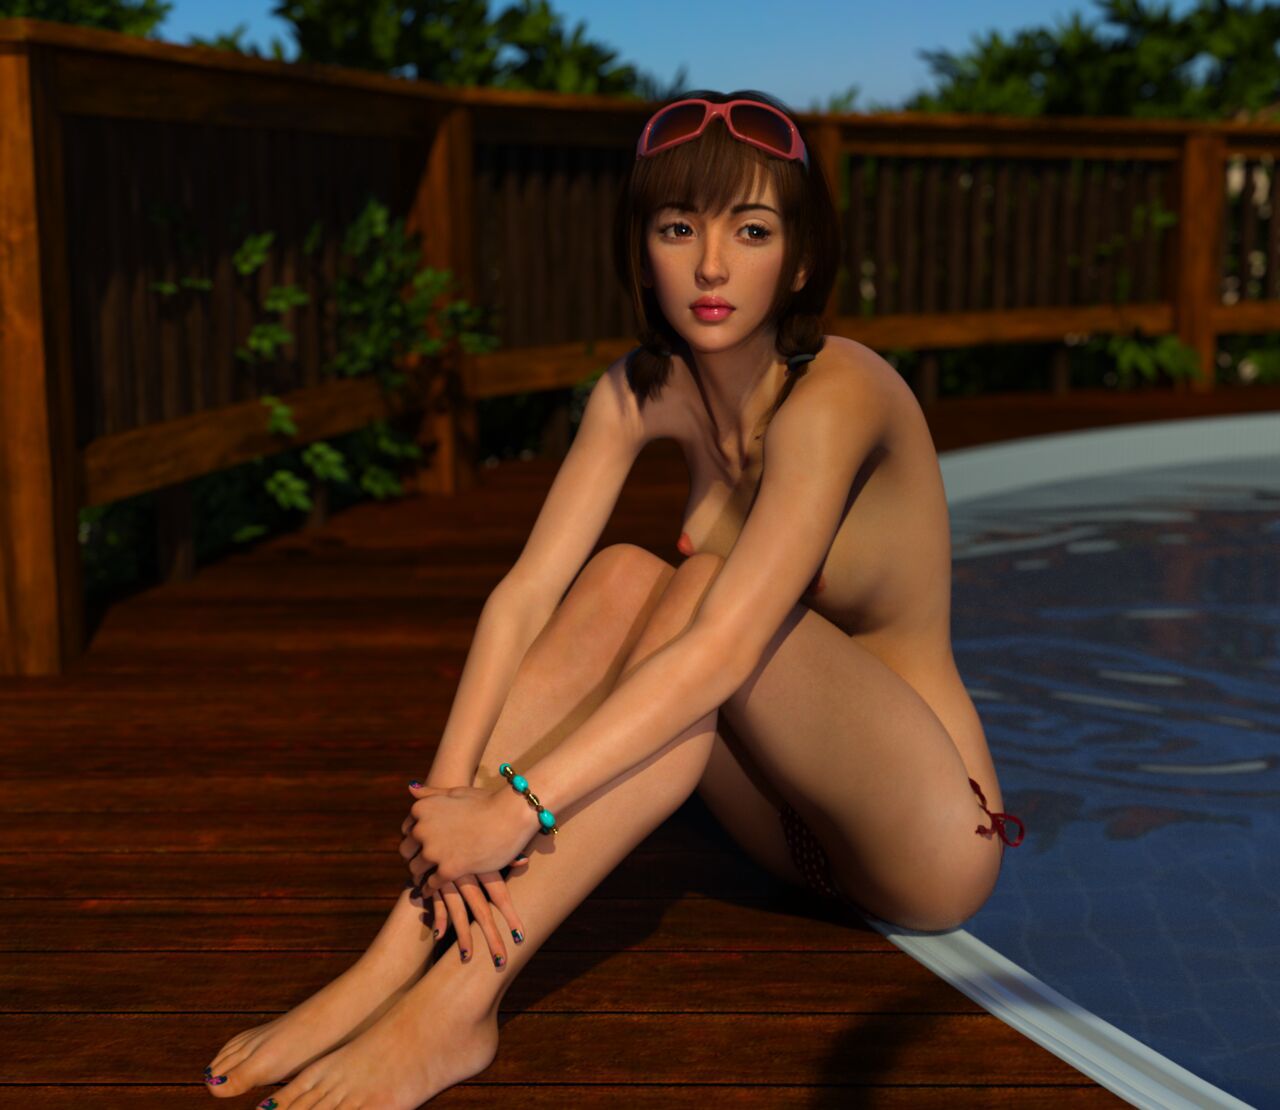 [DICK] Brunette Teen Girl at Pool (93665321) 1